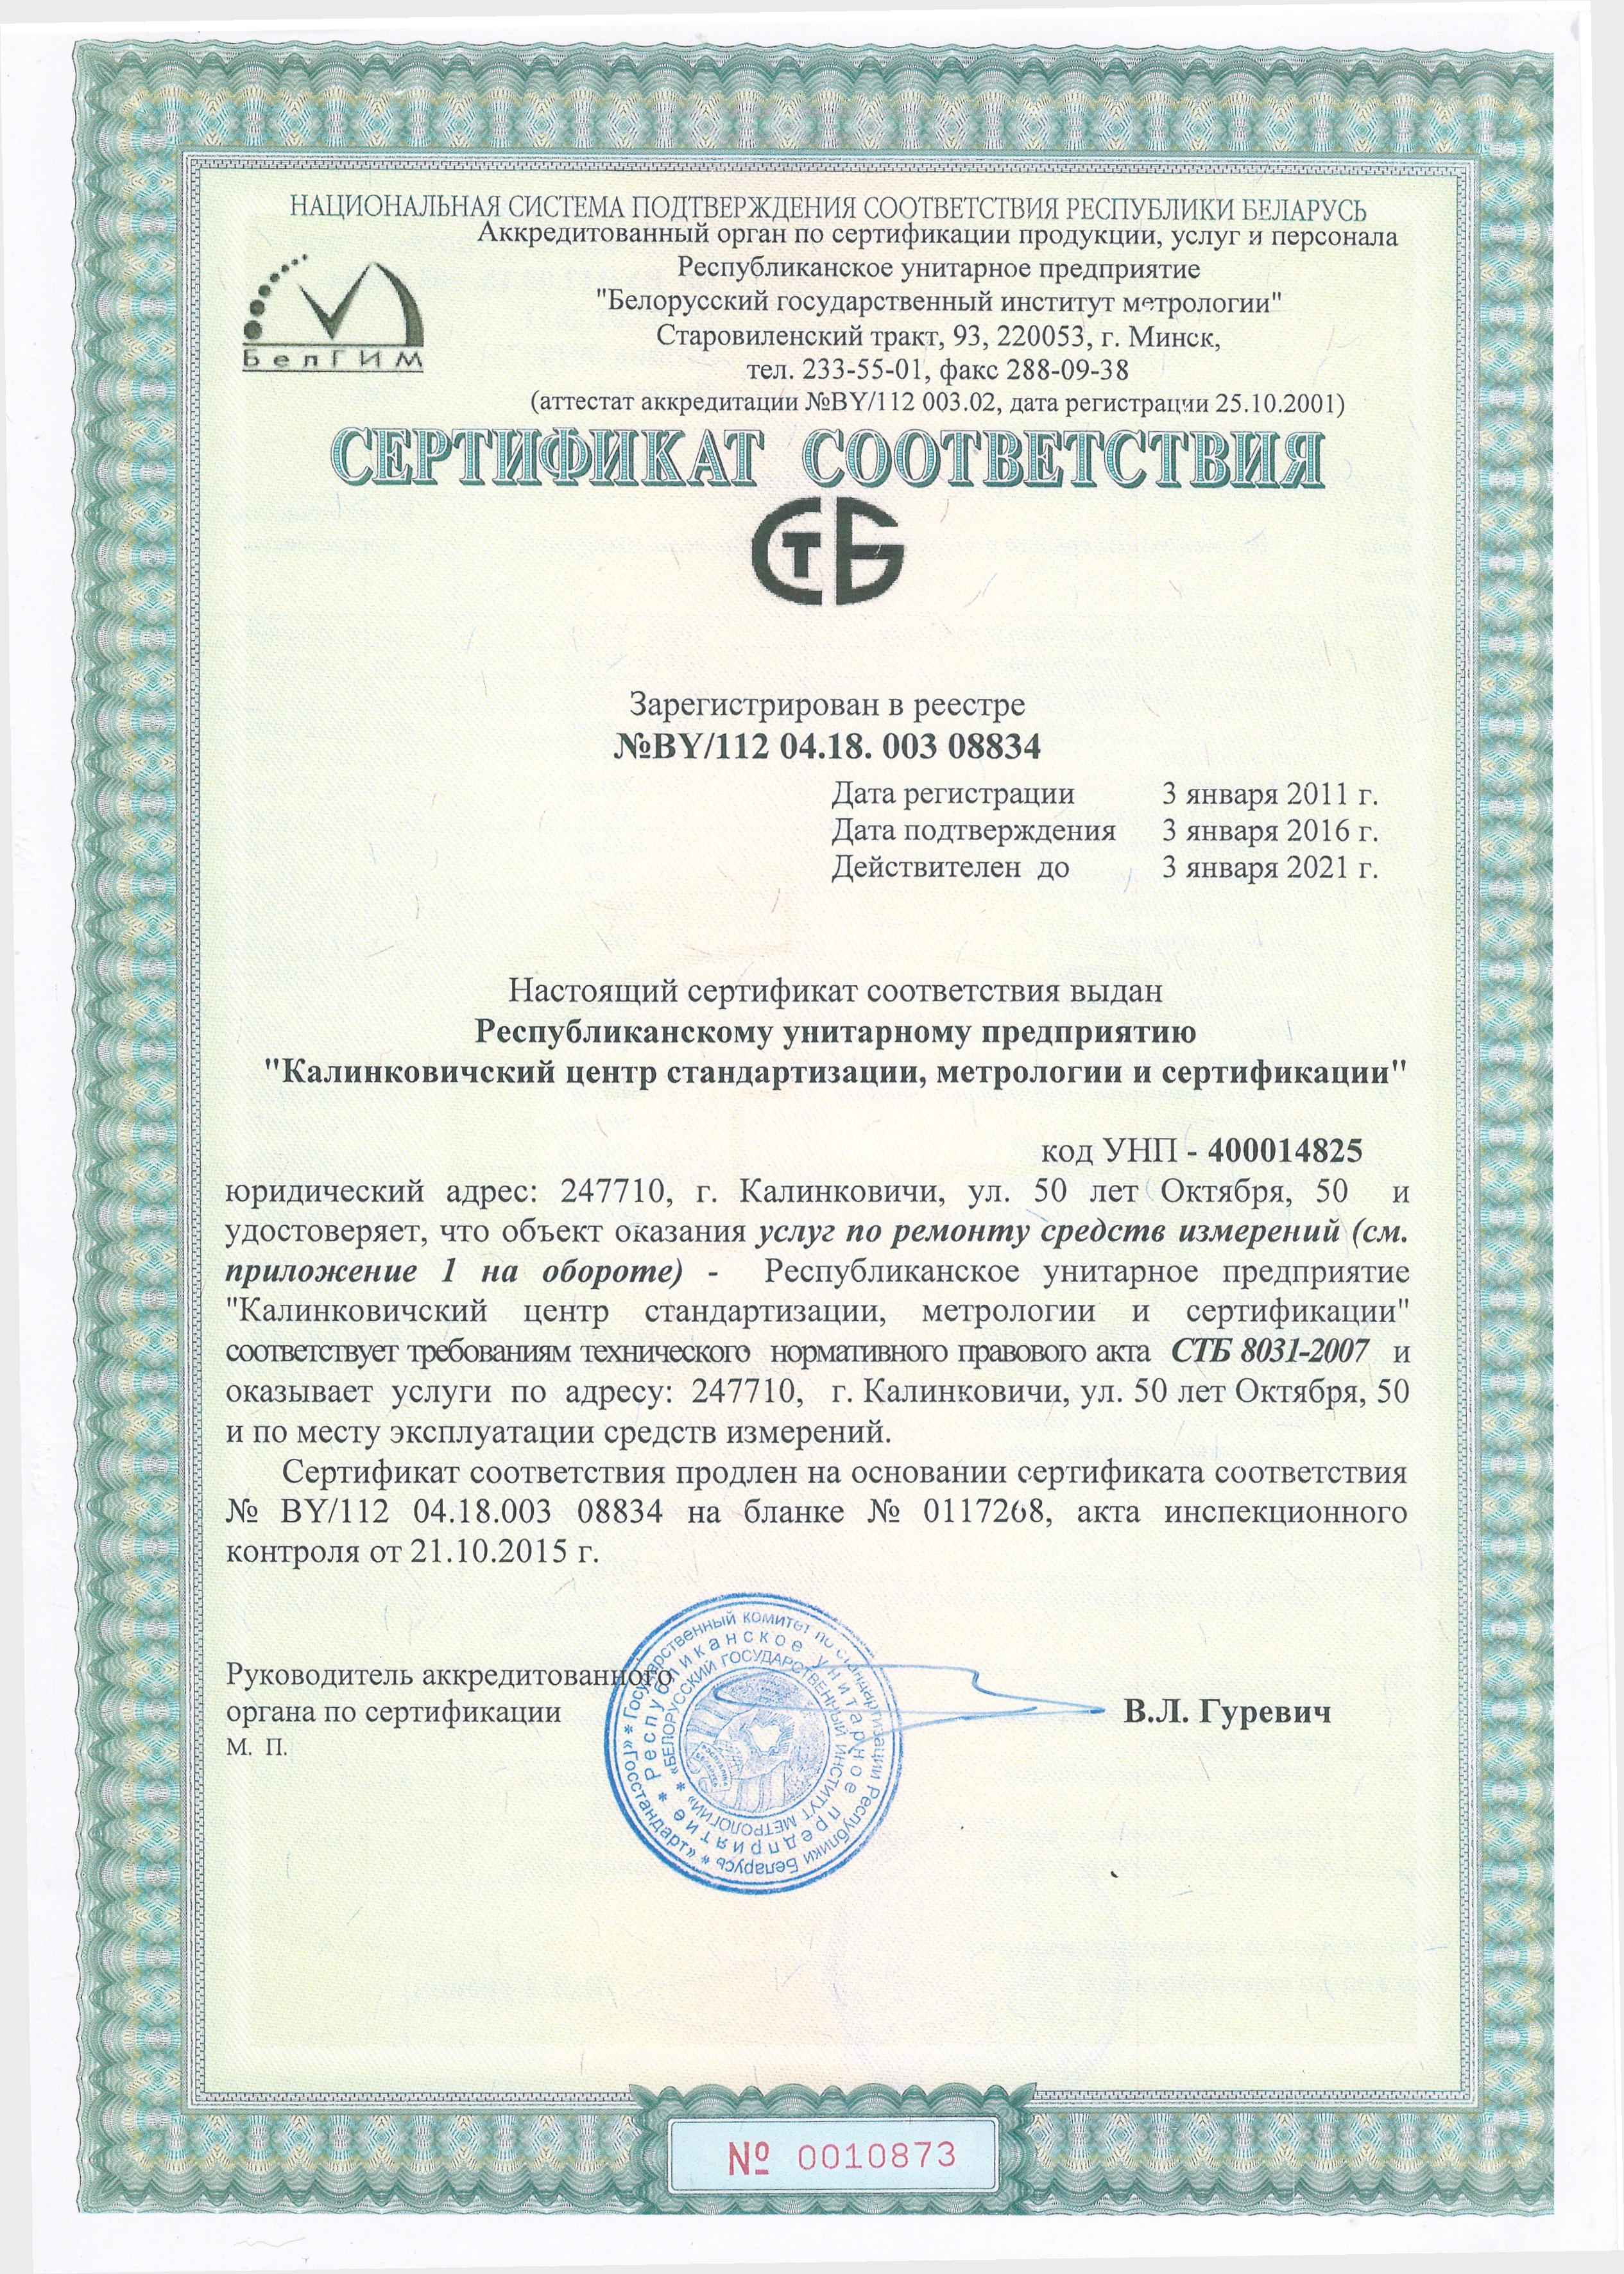 Сертификат соответствия № BY/112 04.18. 003 08834, который удостоверяет, что услуги по ремонту средств измерений соответствуют требованиям, установленным СТБ 8031